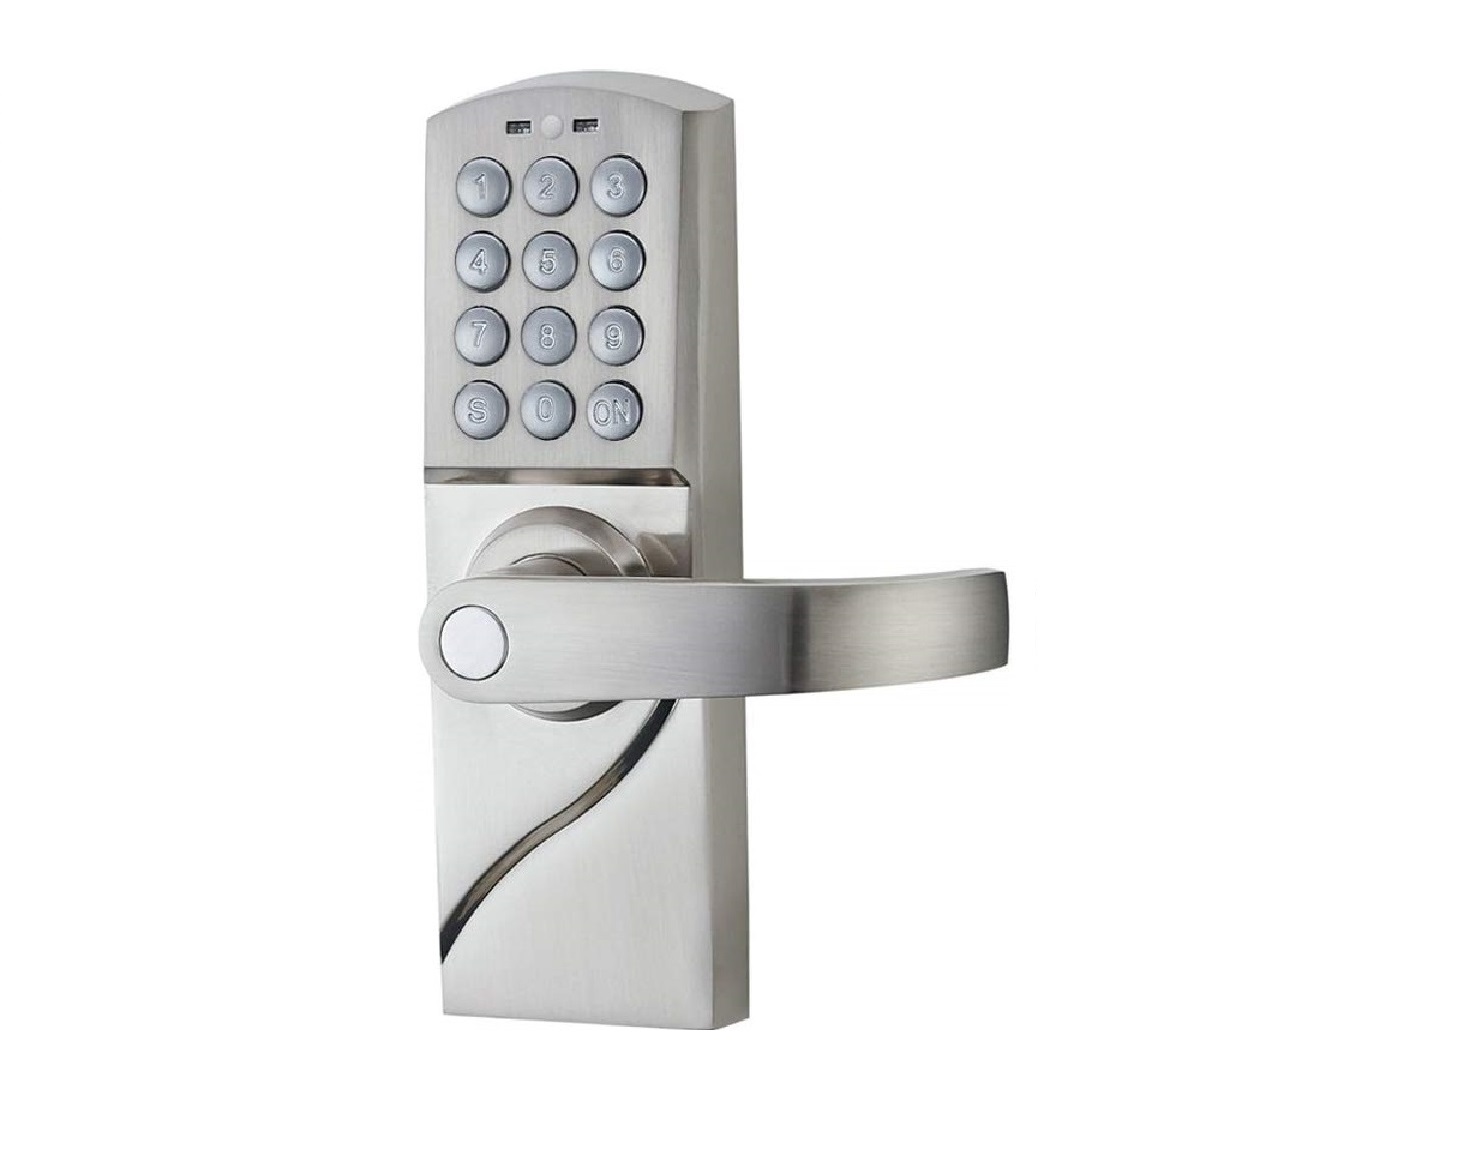 Кодовая дверь в квартиру. Внутренний дверь с кнопочным. Digital Door Lock. Mw87wr дверь код. Laboratory Door Keypad Hitech.